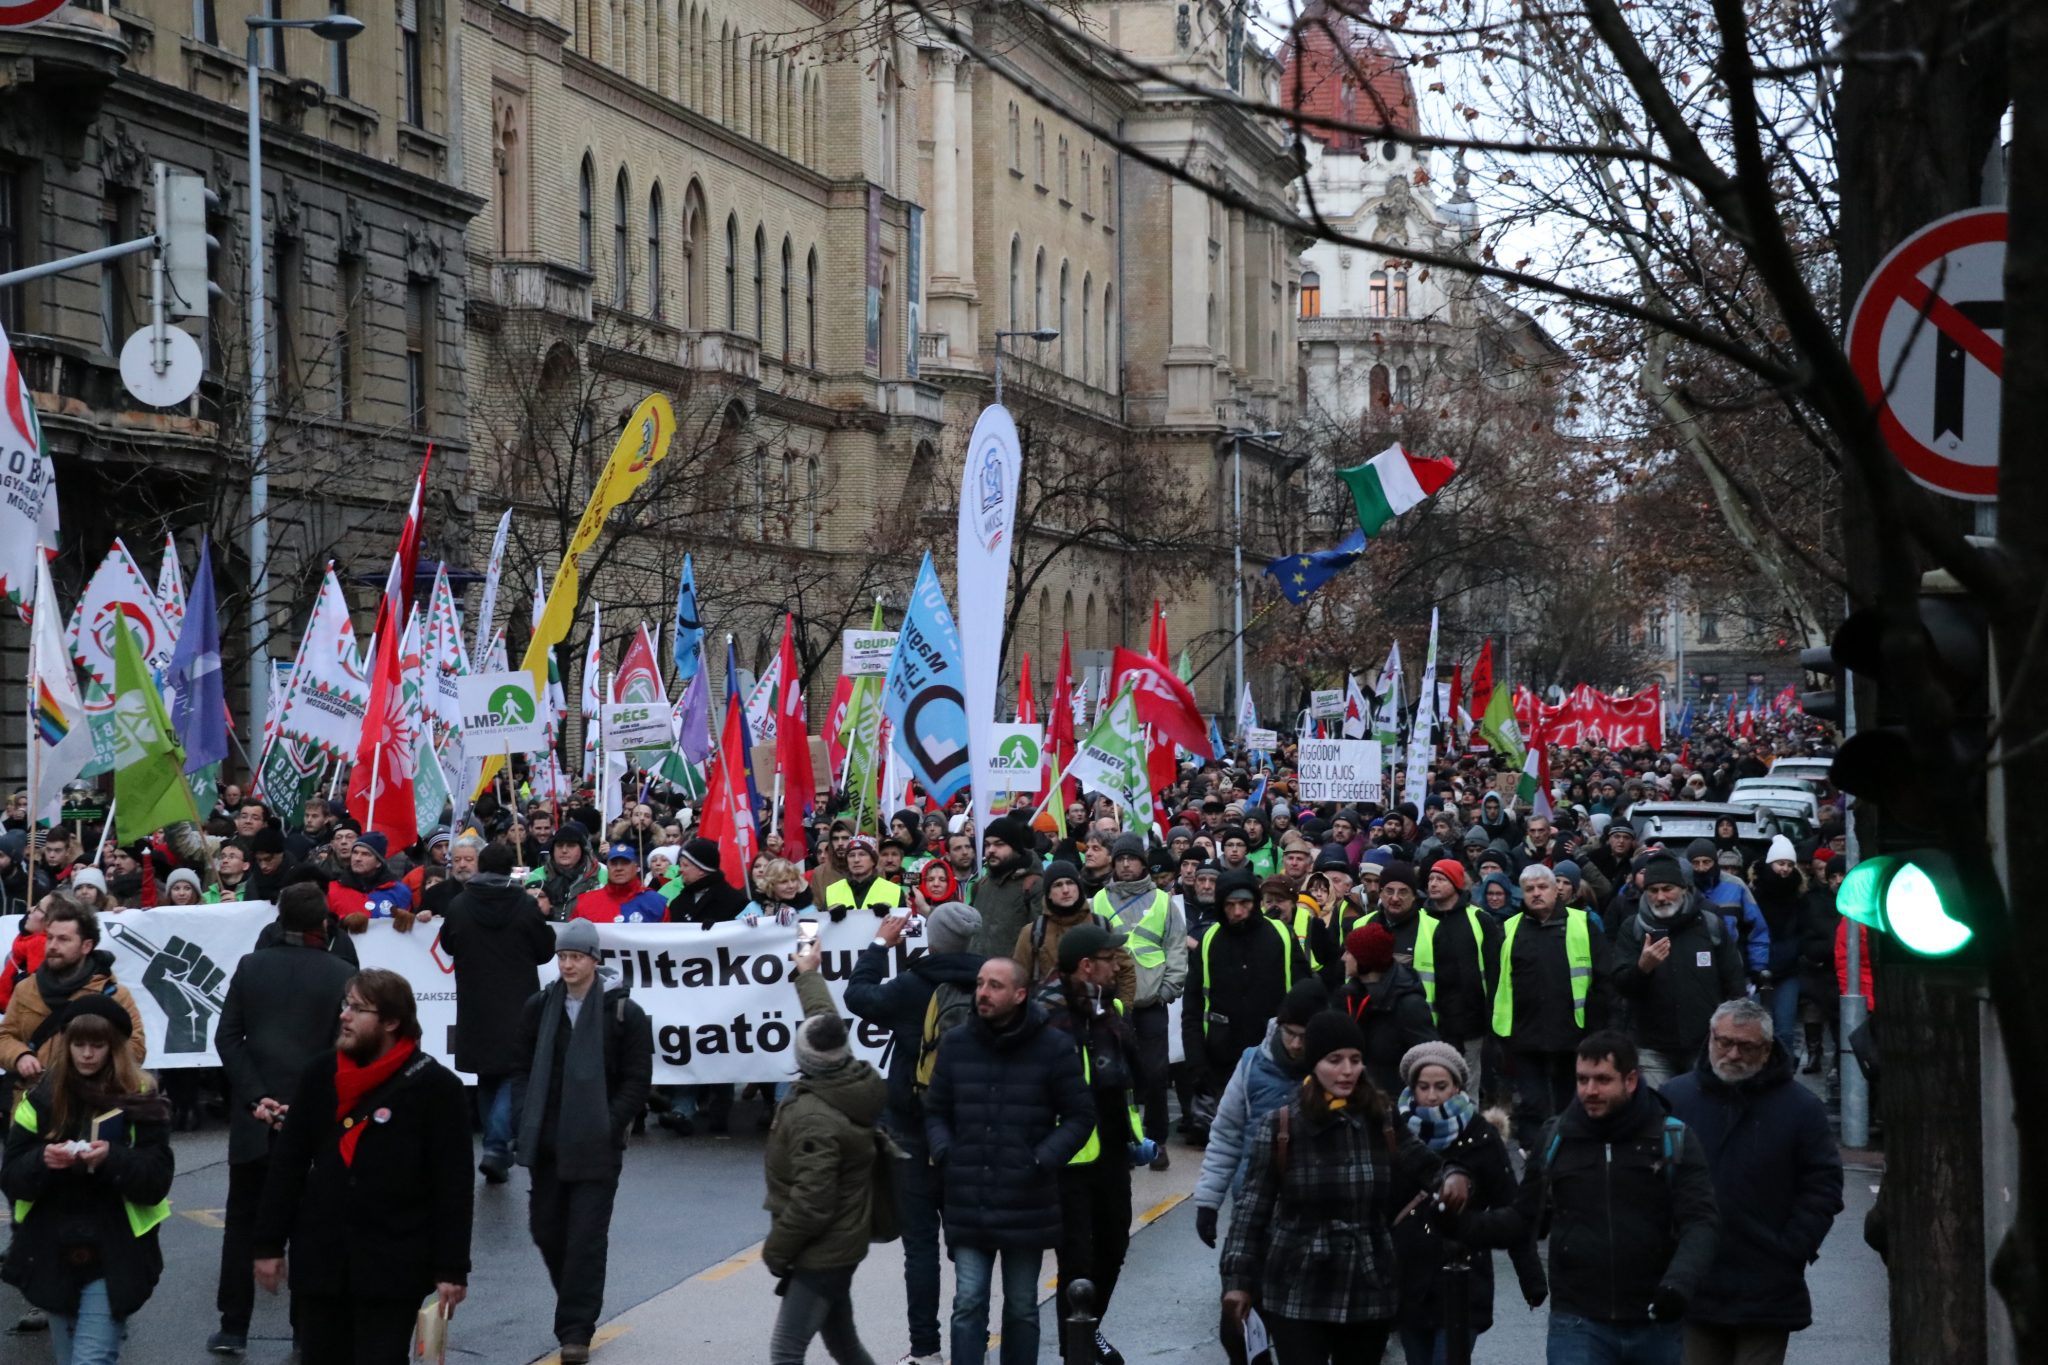 Anti-Regierungs-Demonstration in Budapest